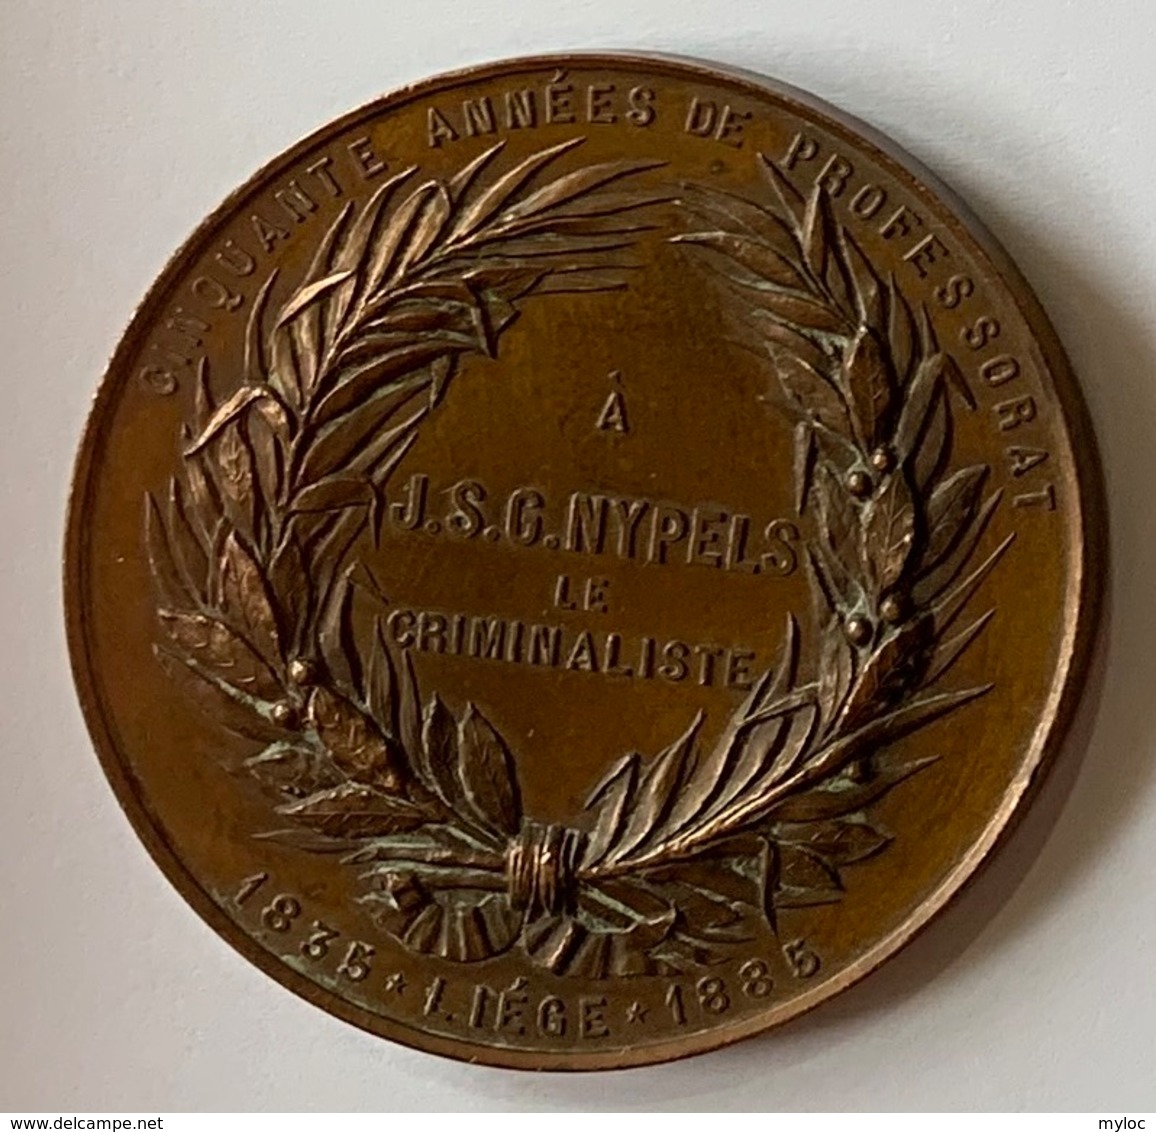 Médaille Bronze. Professeur J.S.G. Nypels. Criminalliste. Cinquante Années De Professorat. Liège 1835-1885. E. Geerts. - Firma's